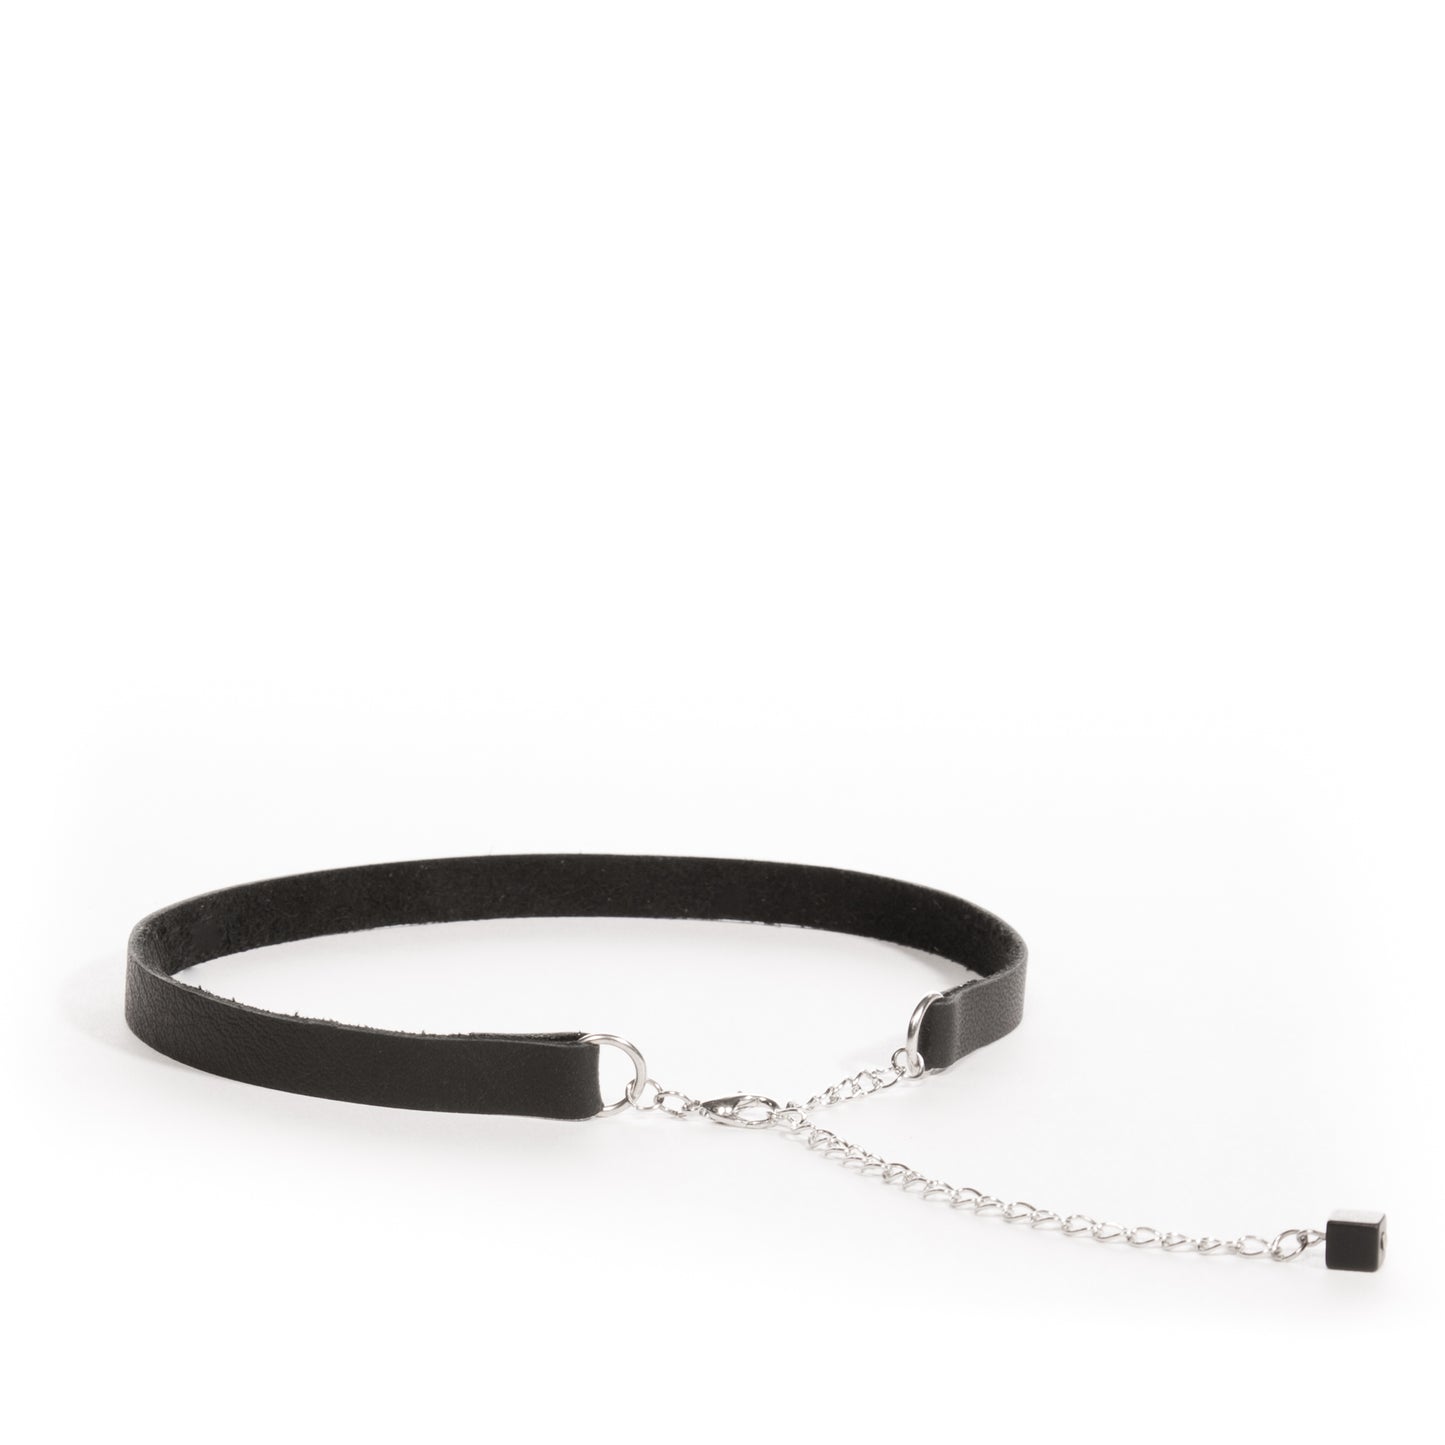 Black choker necklace